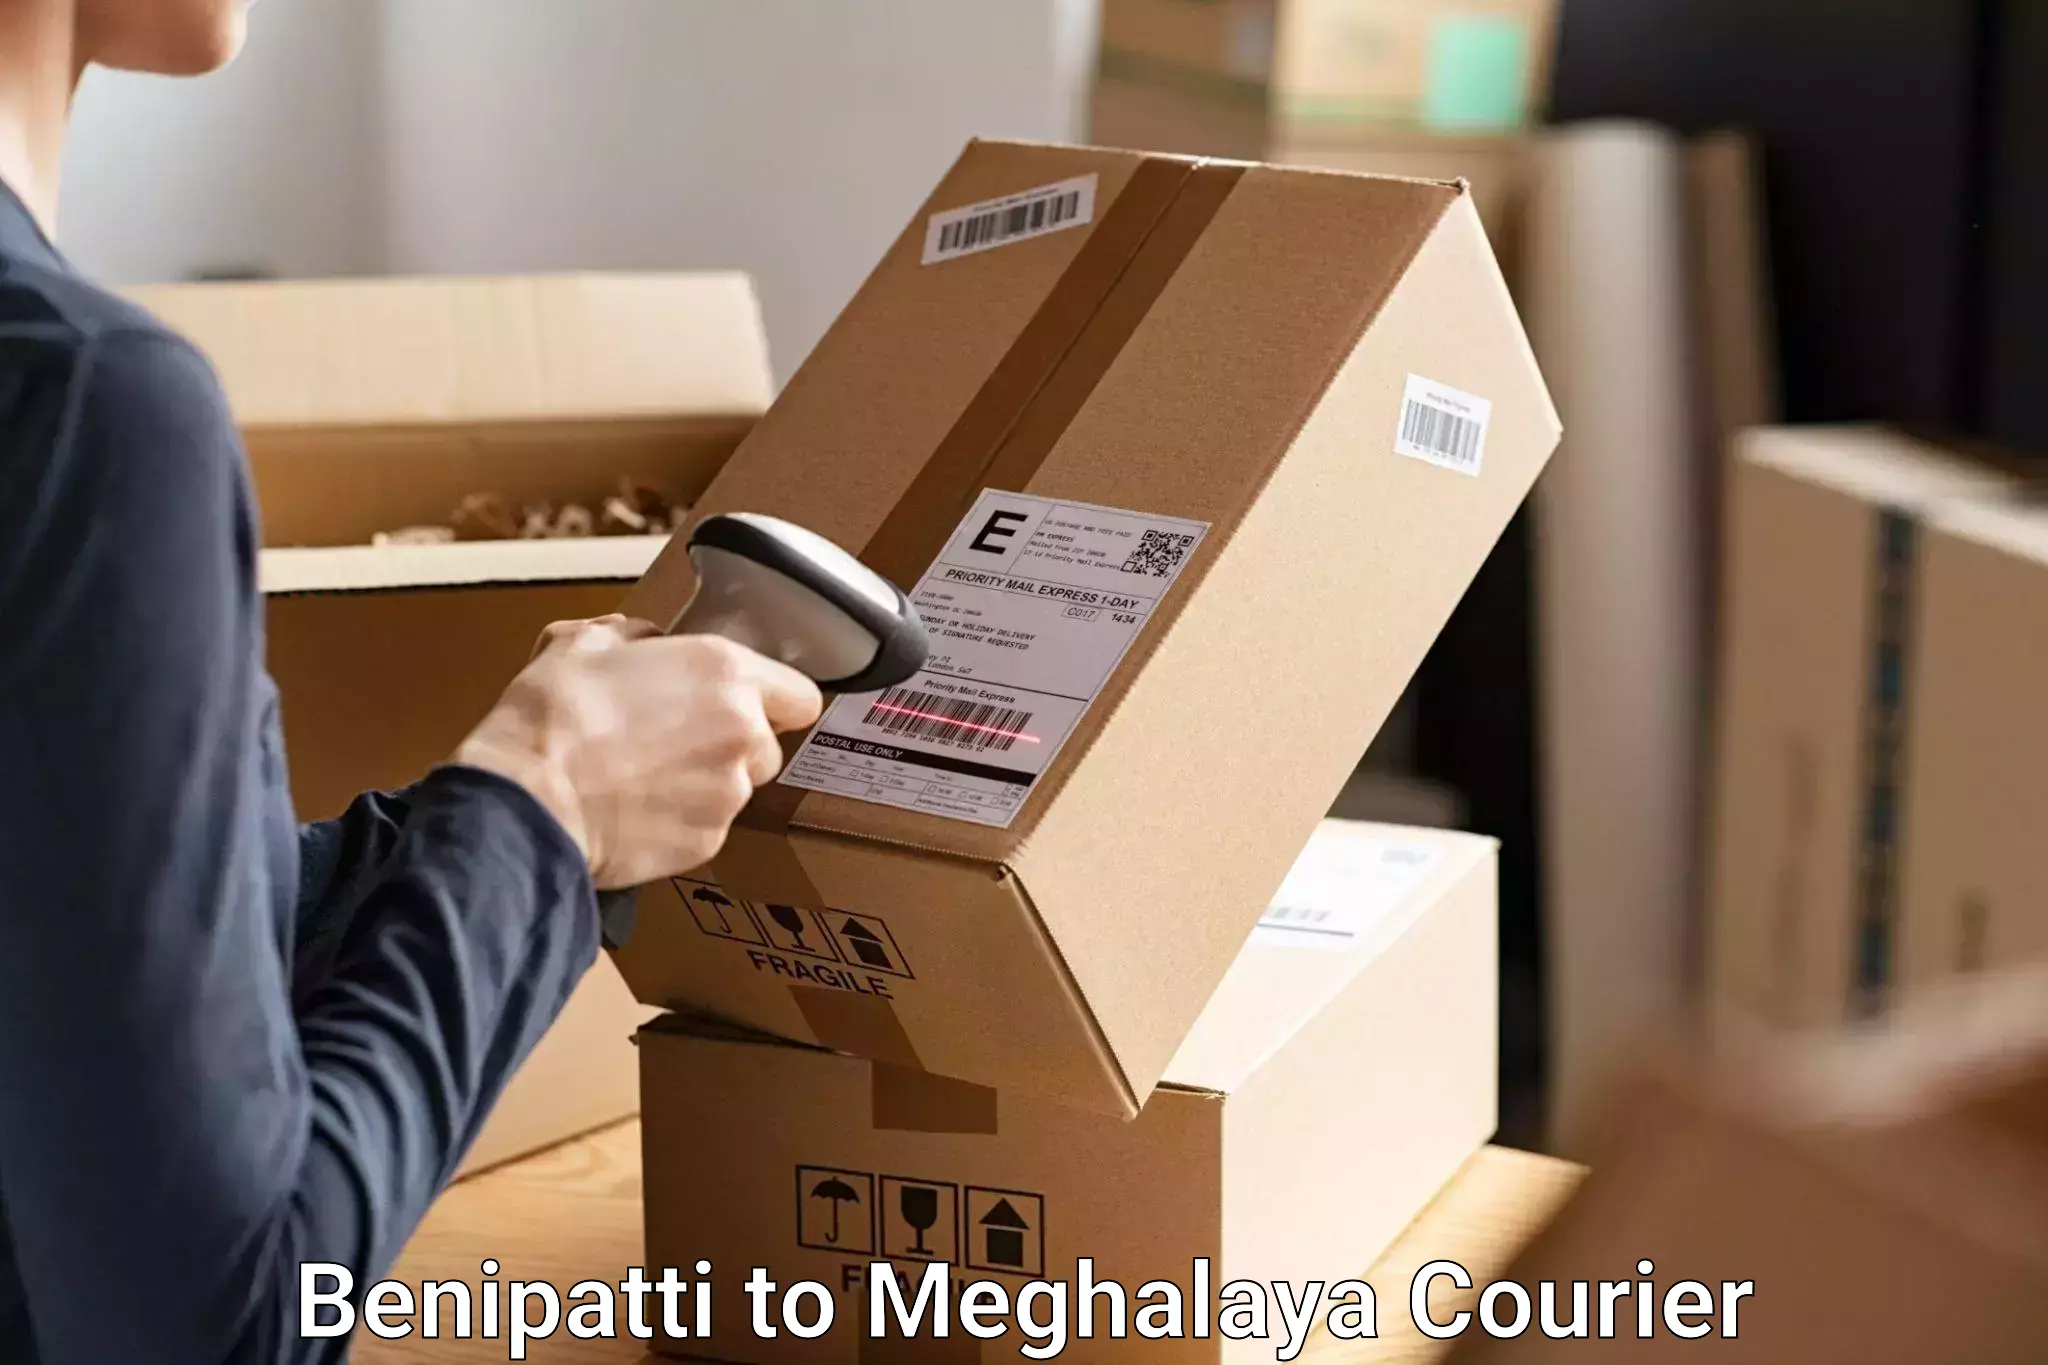 Baggage transport technology Benipatti to NIT Meghalaya